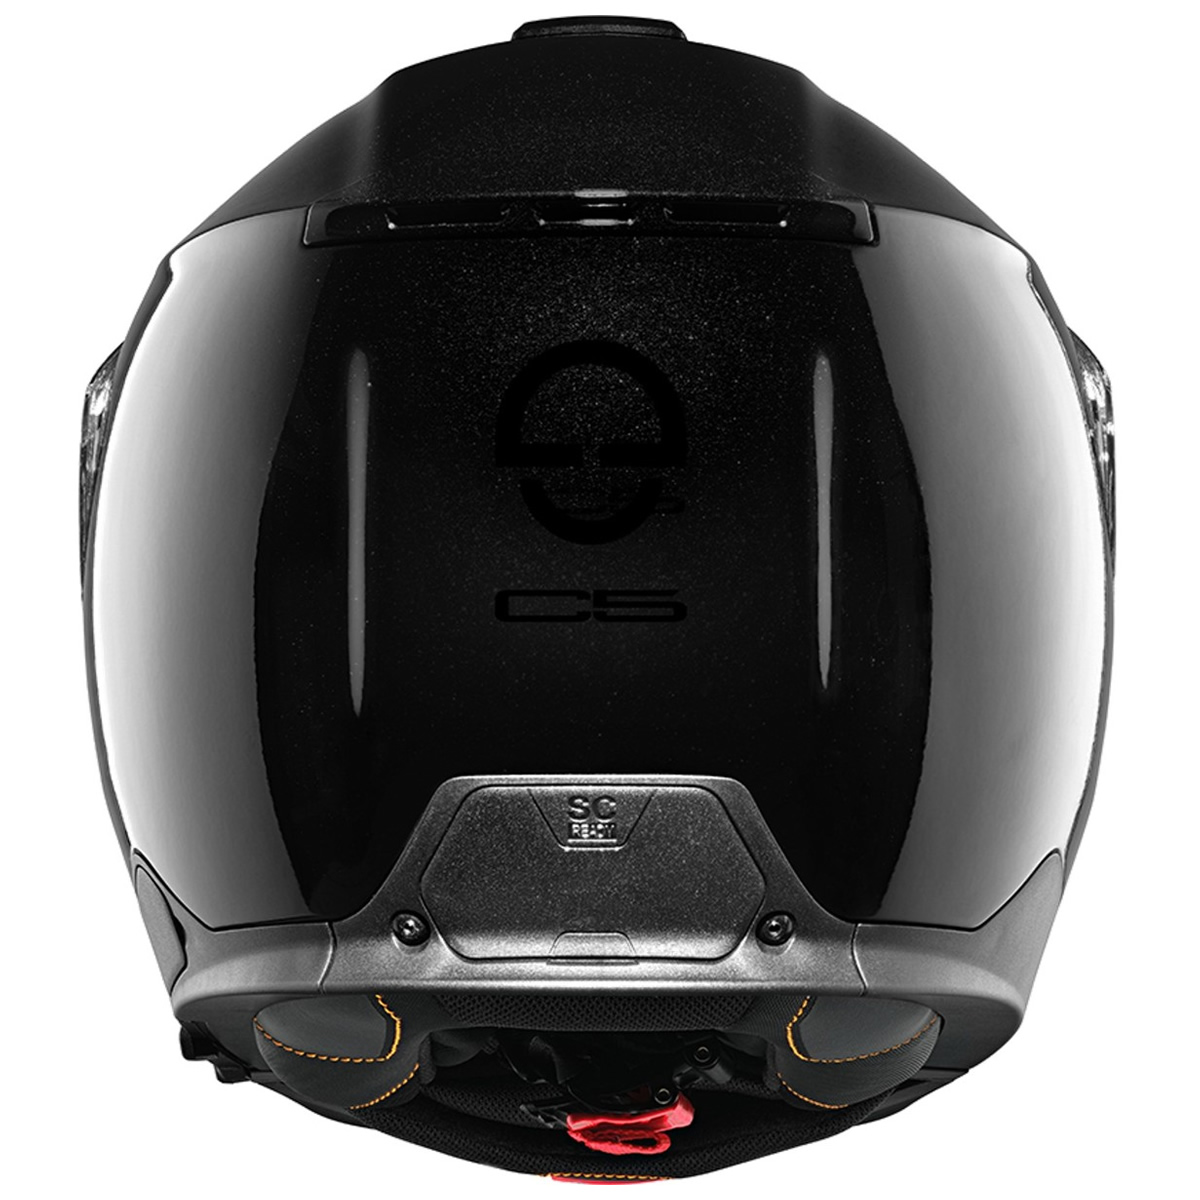 Schuberth C5 Solid Helm, schwarz